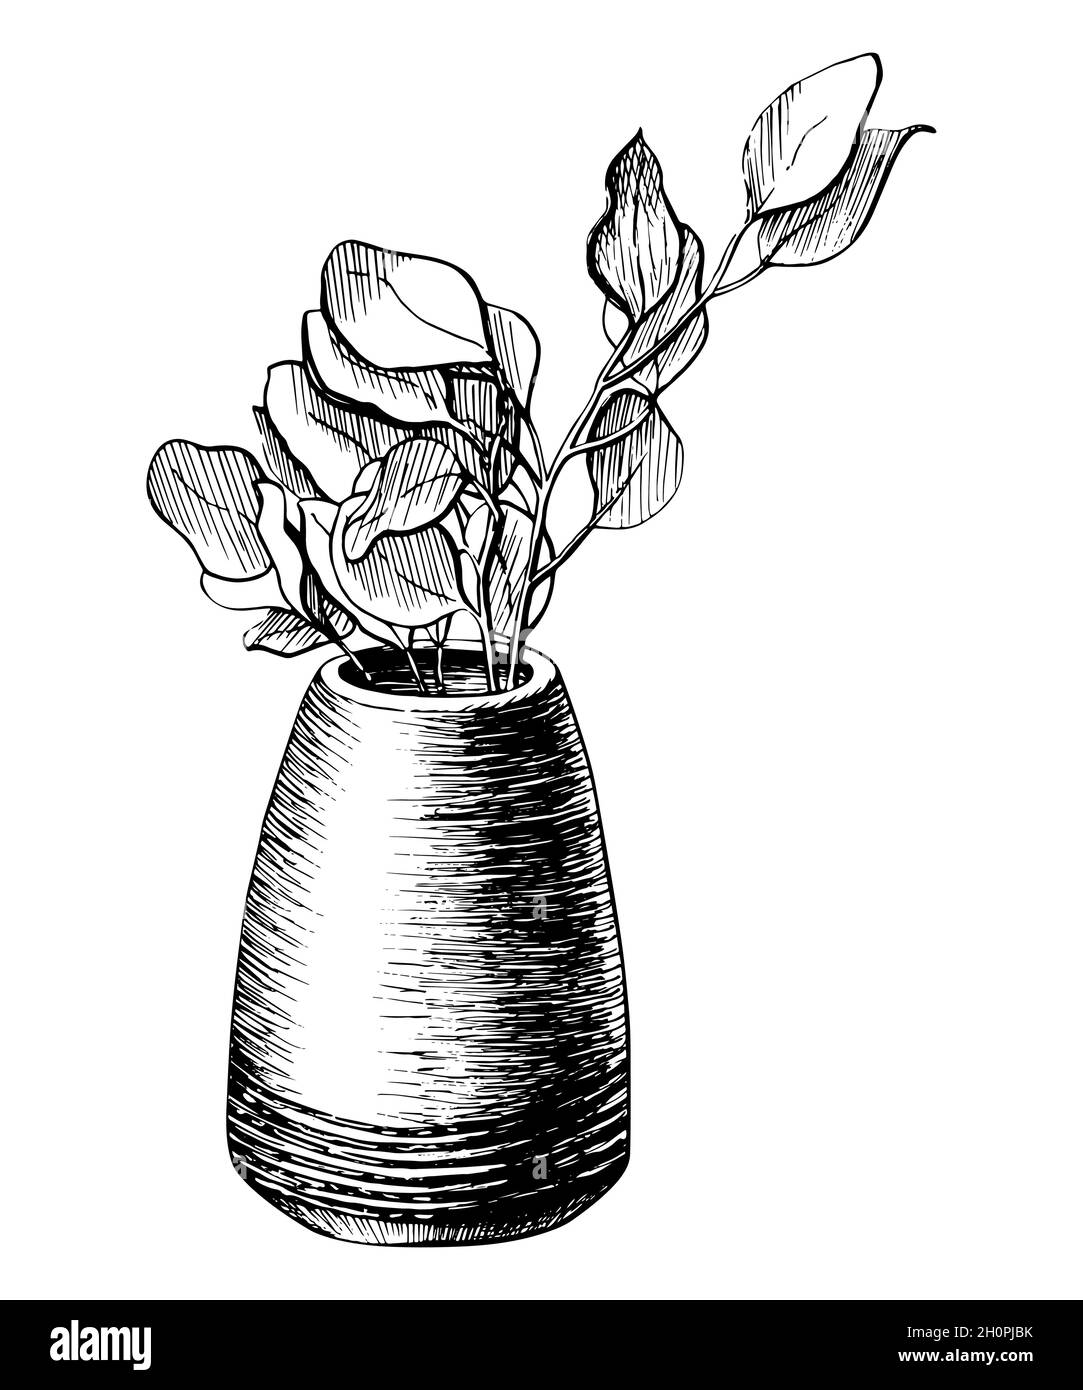 Fleur dans une ligne de pot dessin graphique carte postale. Branche d'arbre dans une illustration vectorielle de vase dessinée à la main. Esquisse de printemps nature d'une plante isolée sur fond blanc Illustration de Vecteur